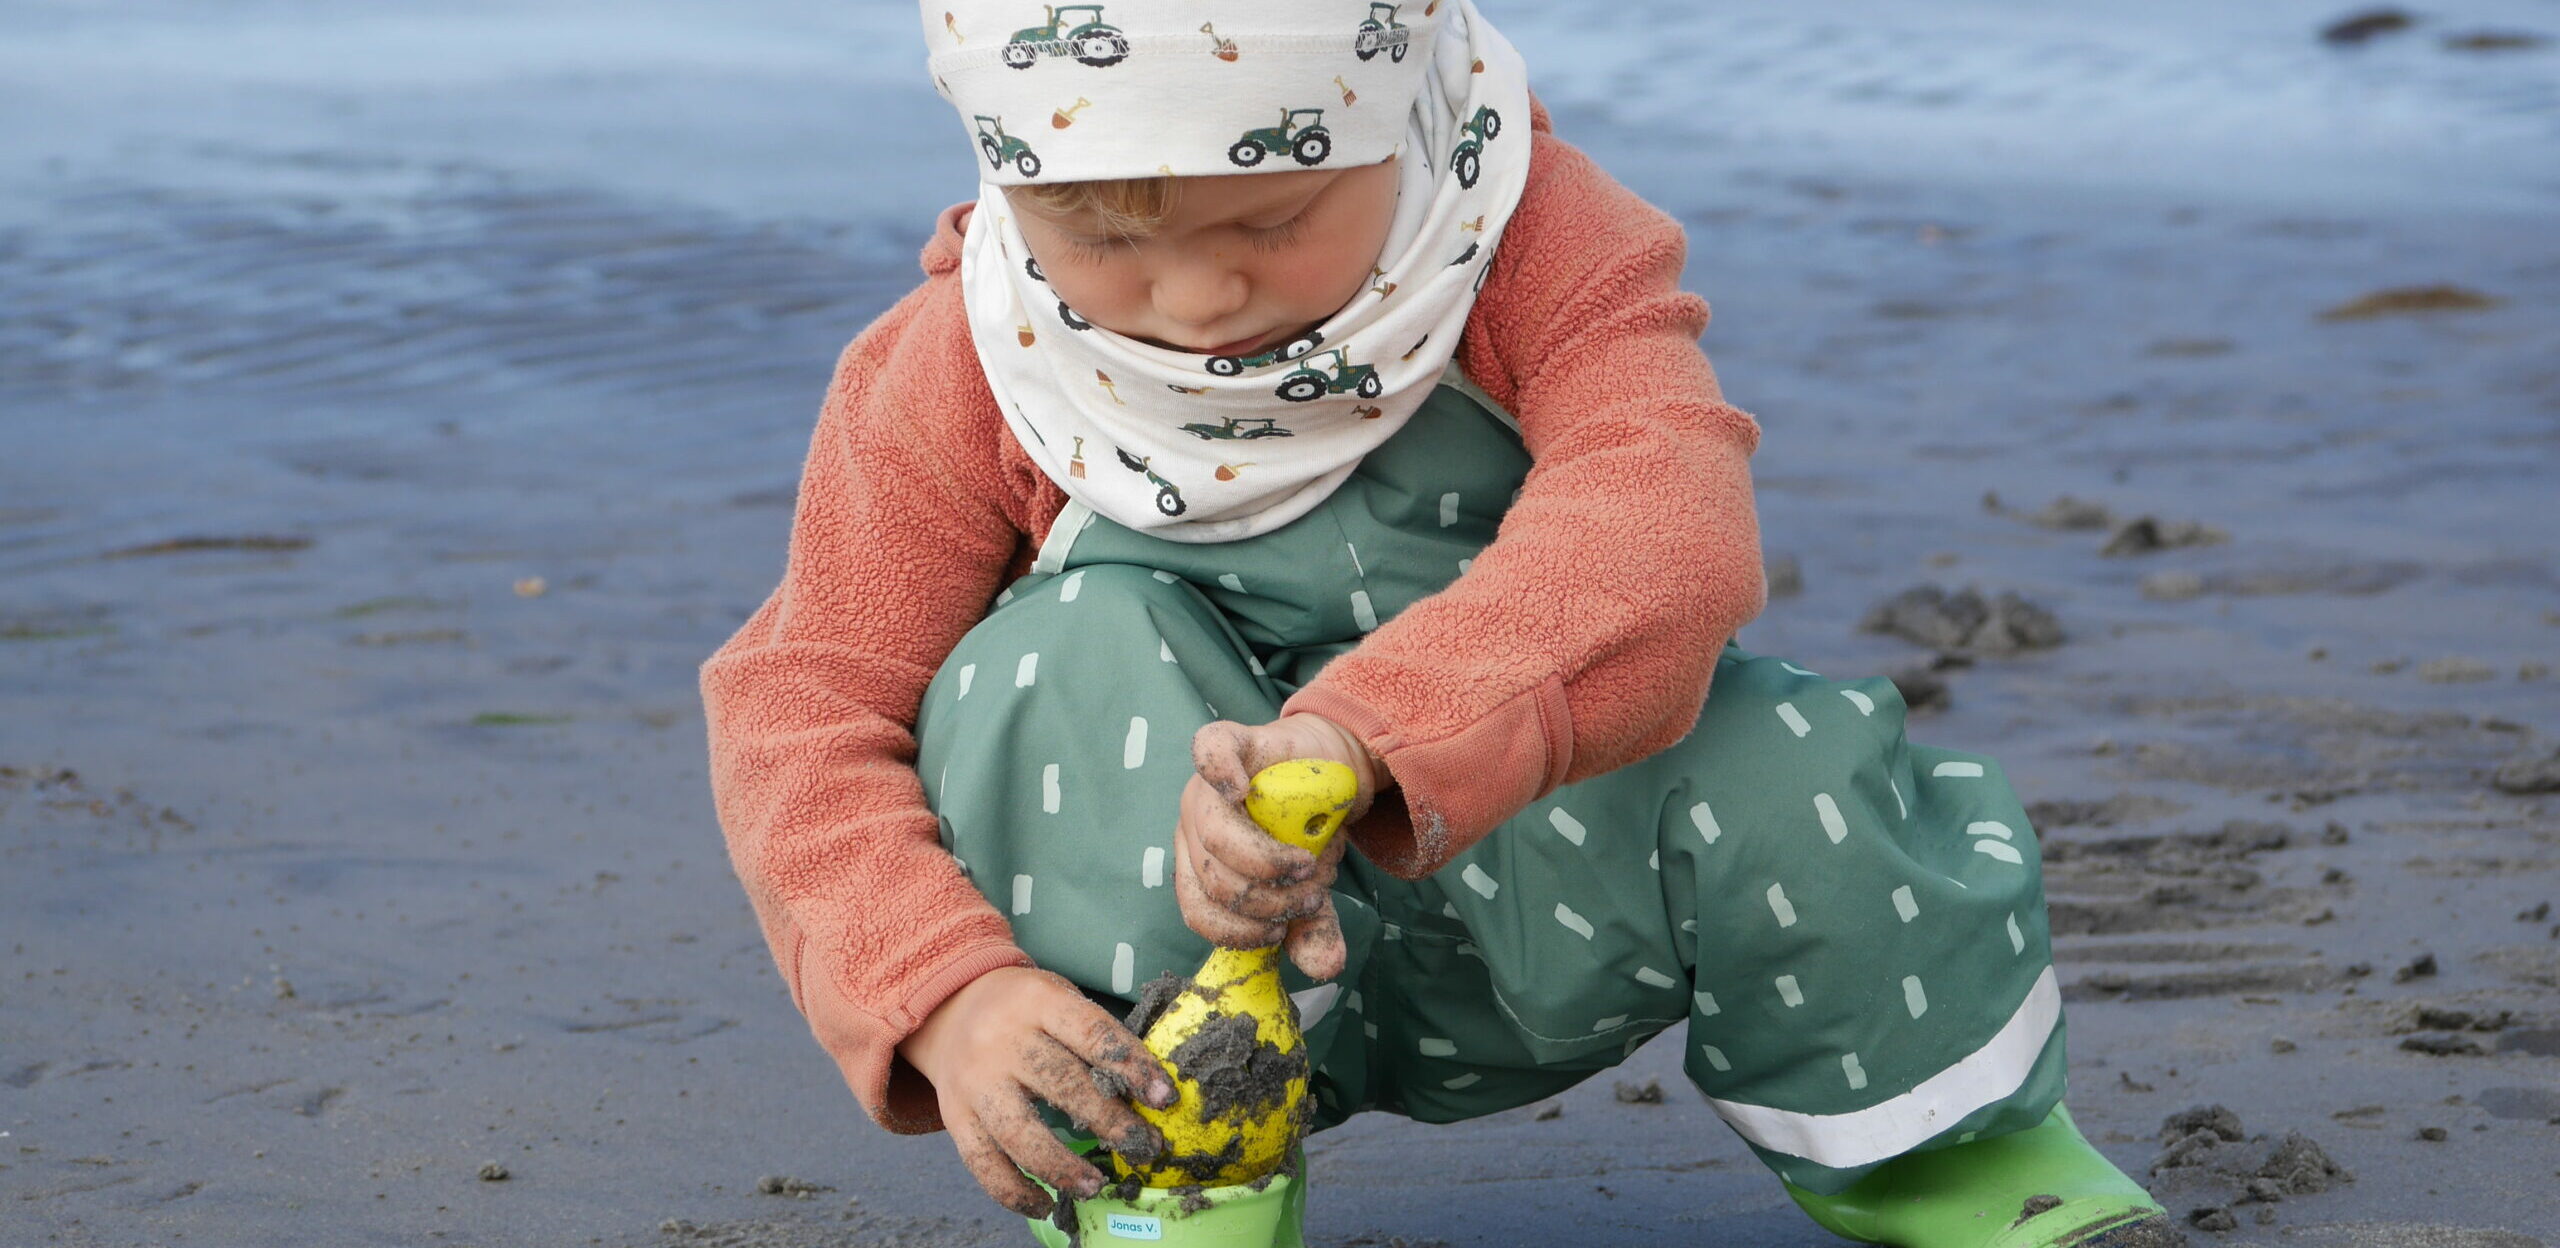 Kind spielt am Strand mit Sandspielsachen